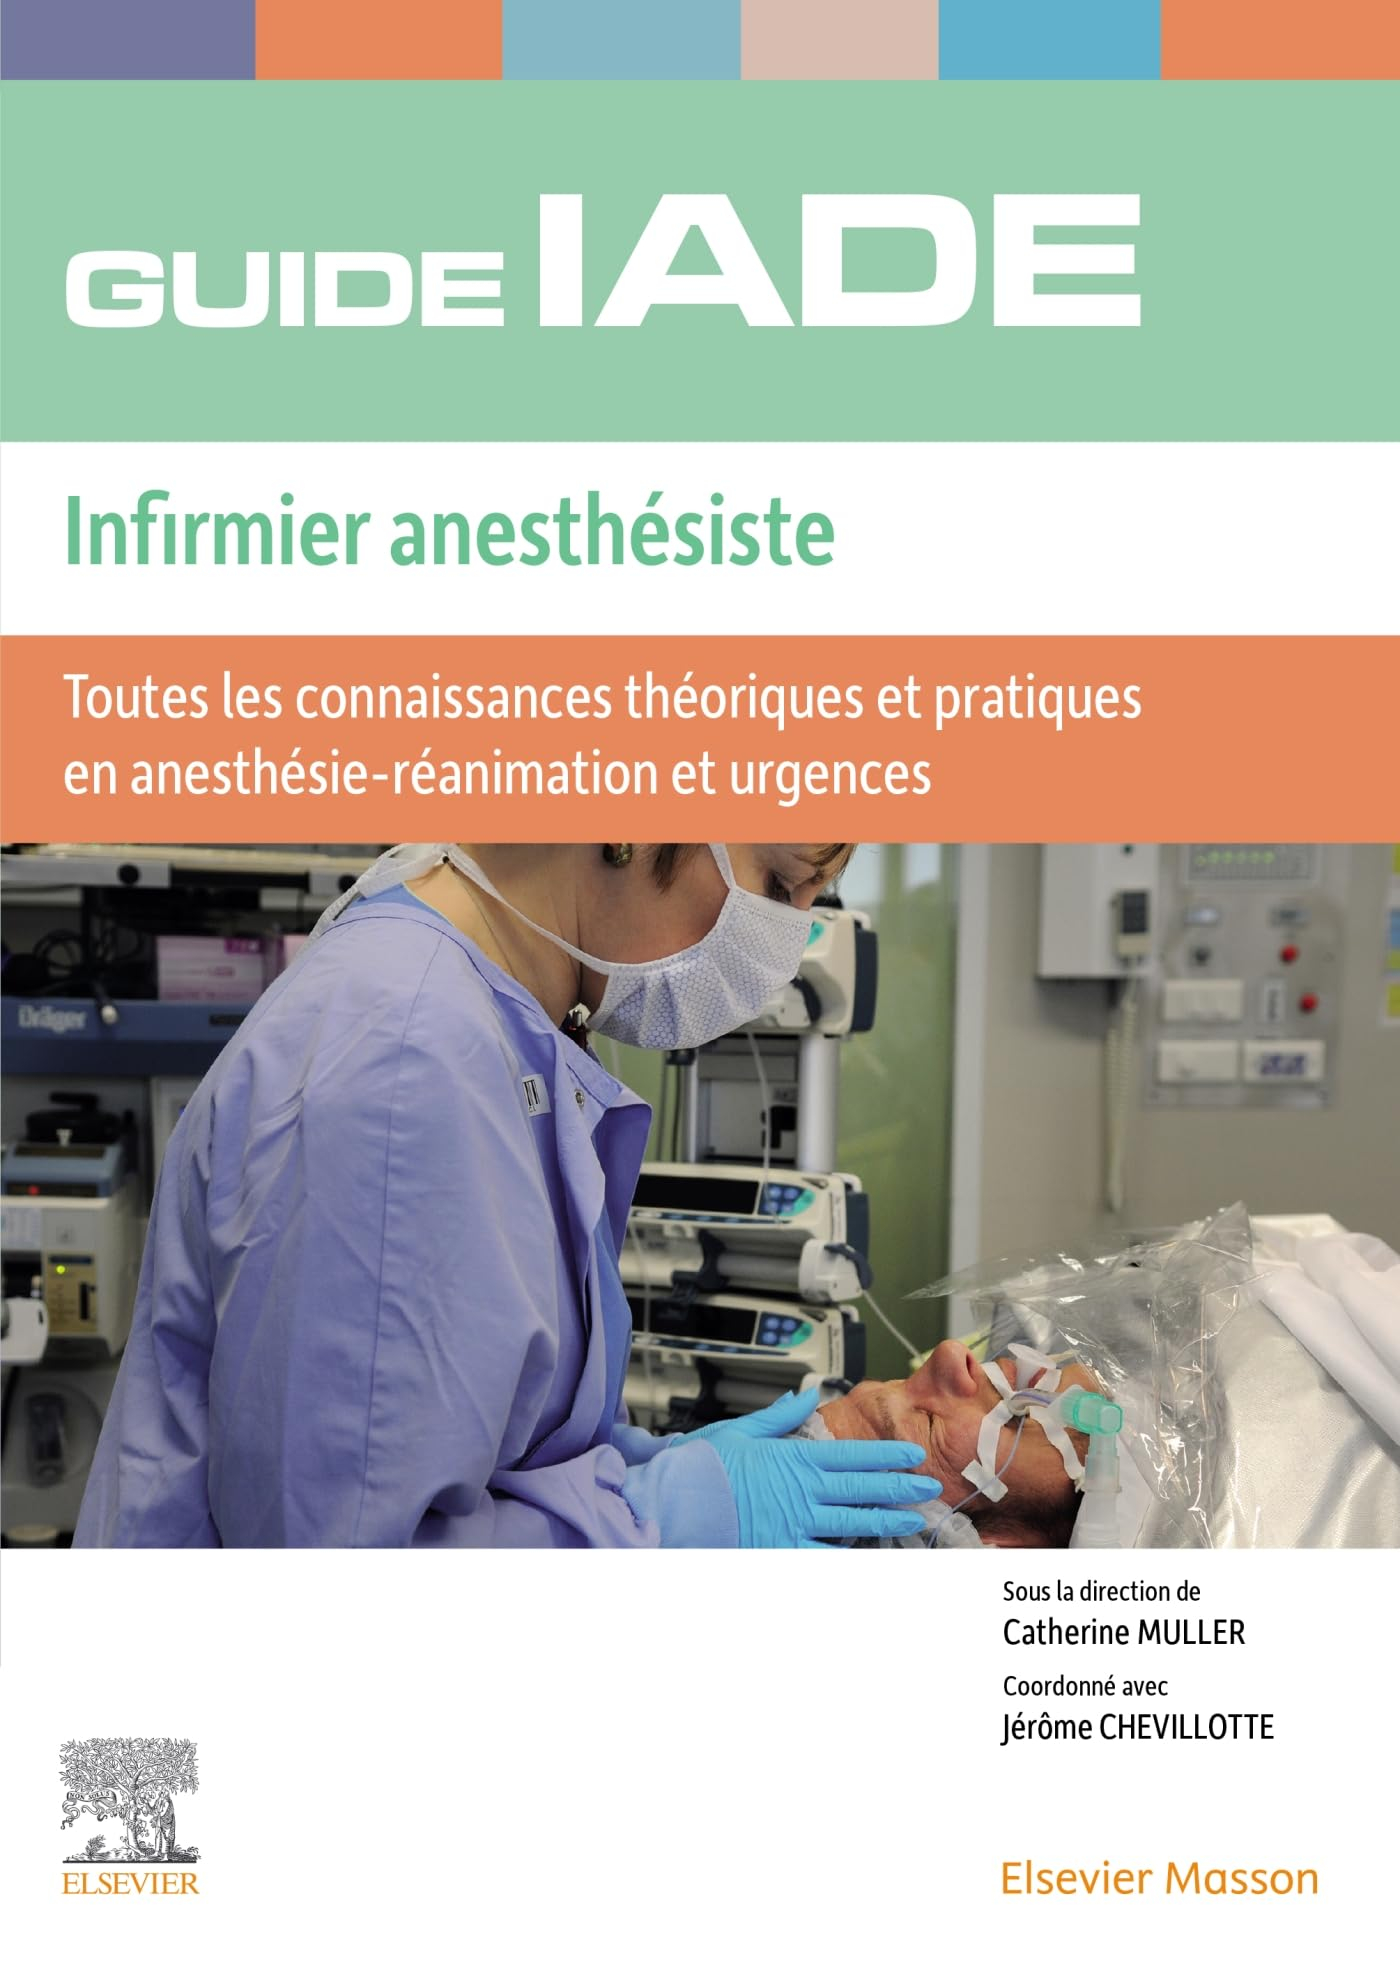 Guide IADE, infirmier anesthésiste : toutes les connaissances théoriques et pratiques en anesthésie-